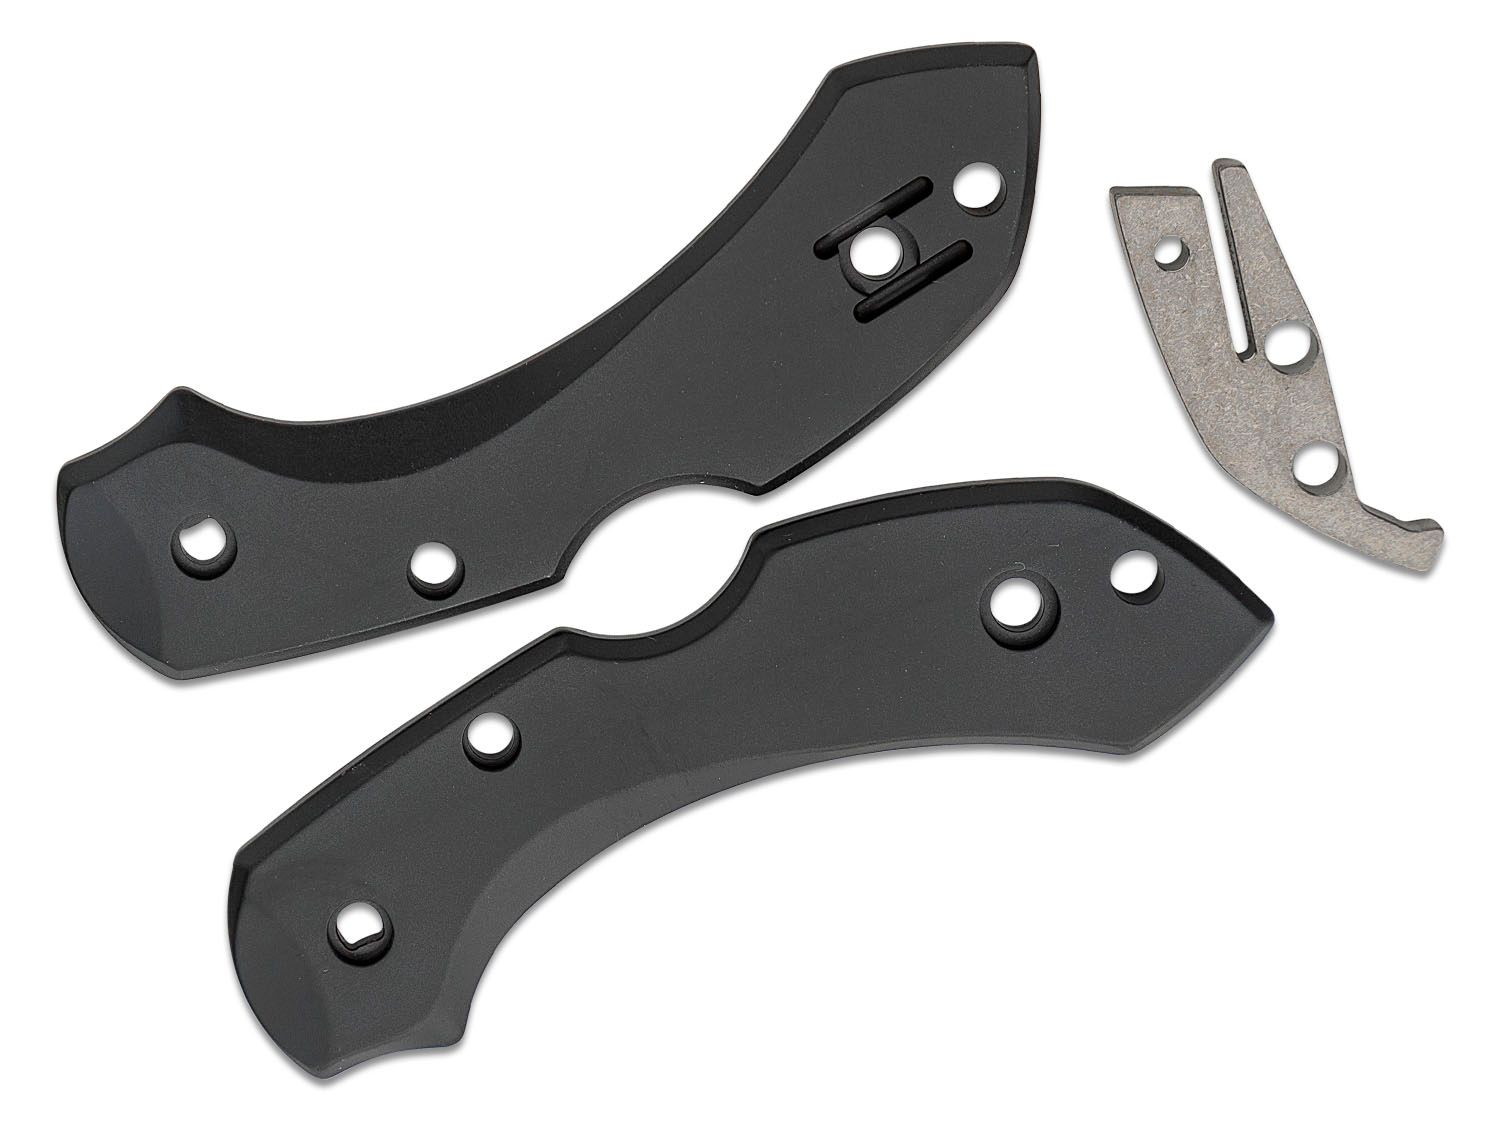 Titanium Pocket Knife Accessories, Titanium Knife Scales